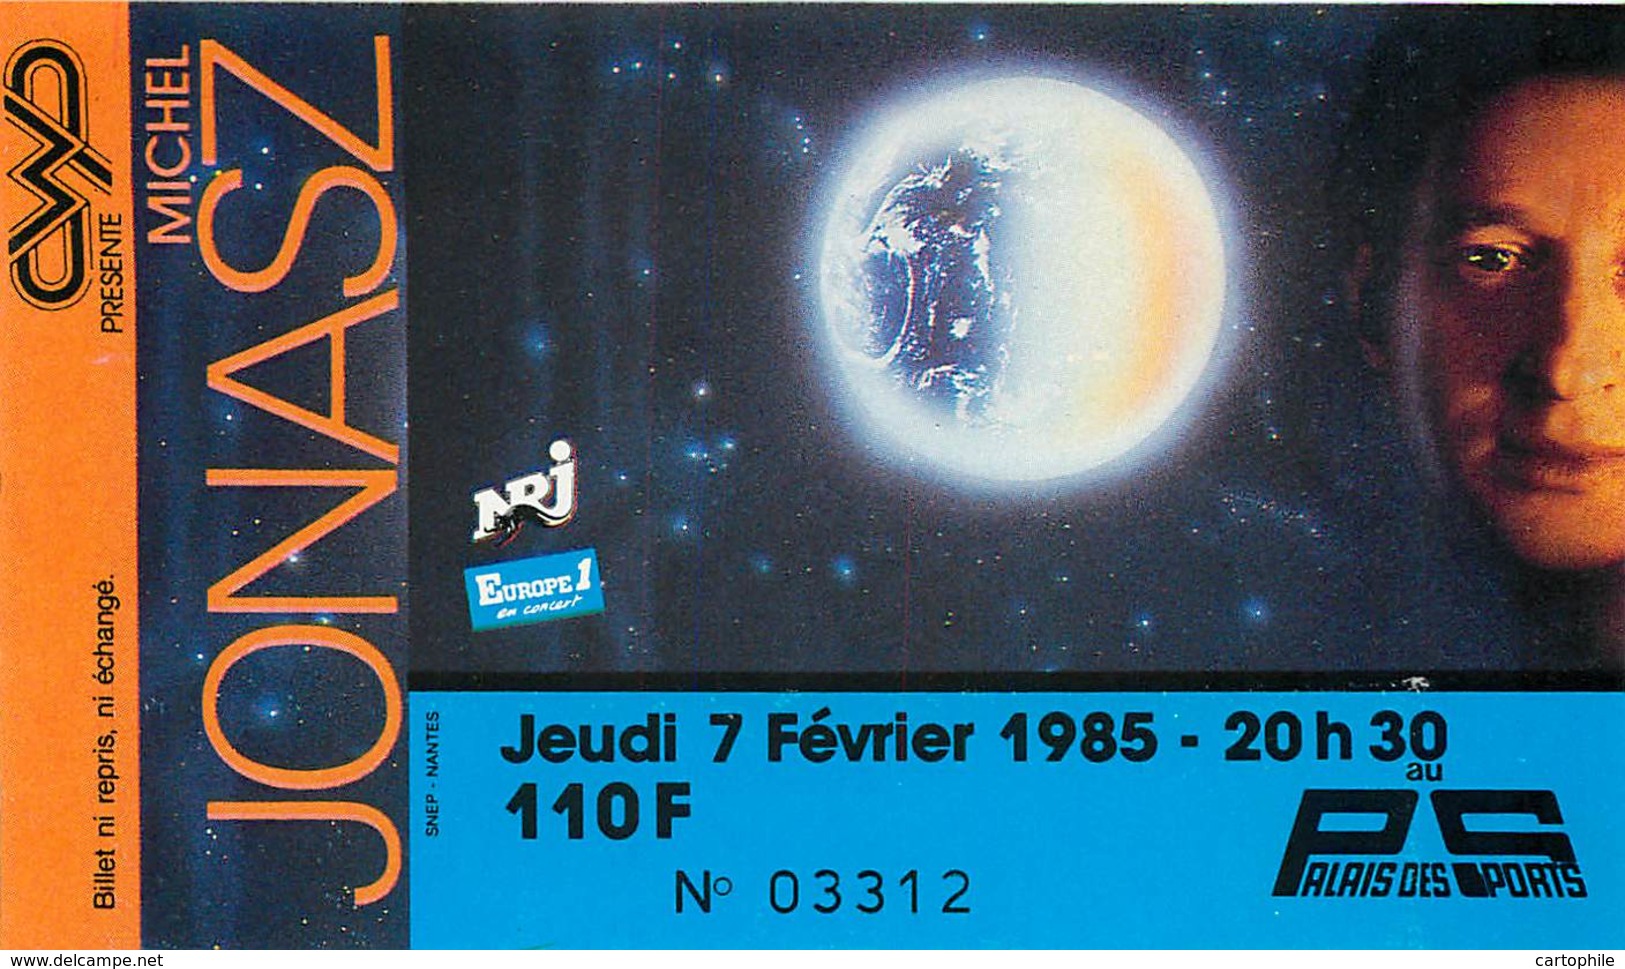 Ticket De Concert - Michel Jonasz - 7 Février 1985 - Paris Palais Des Sports - Concert Tickets